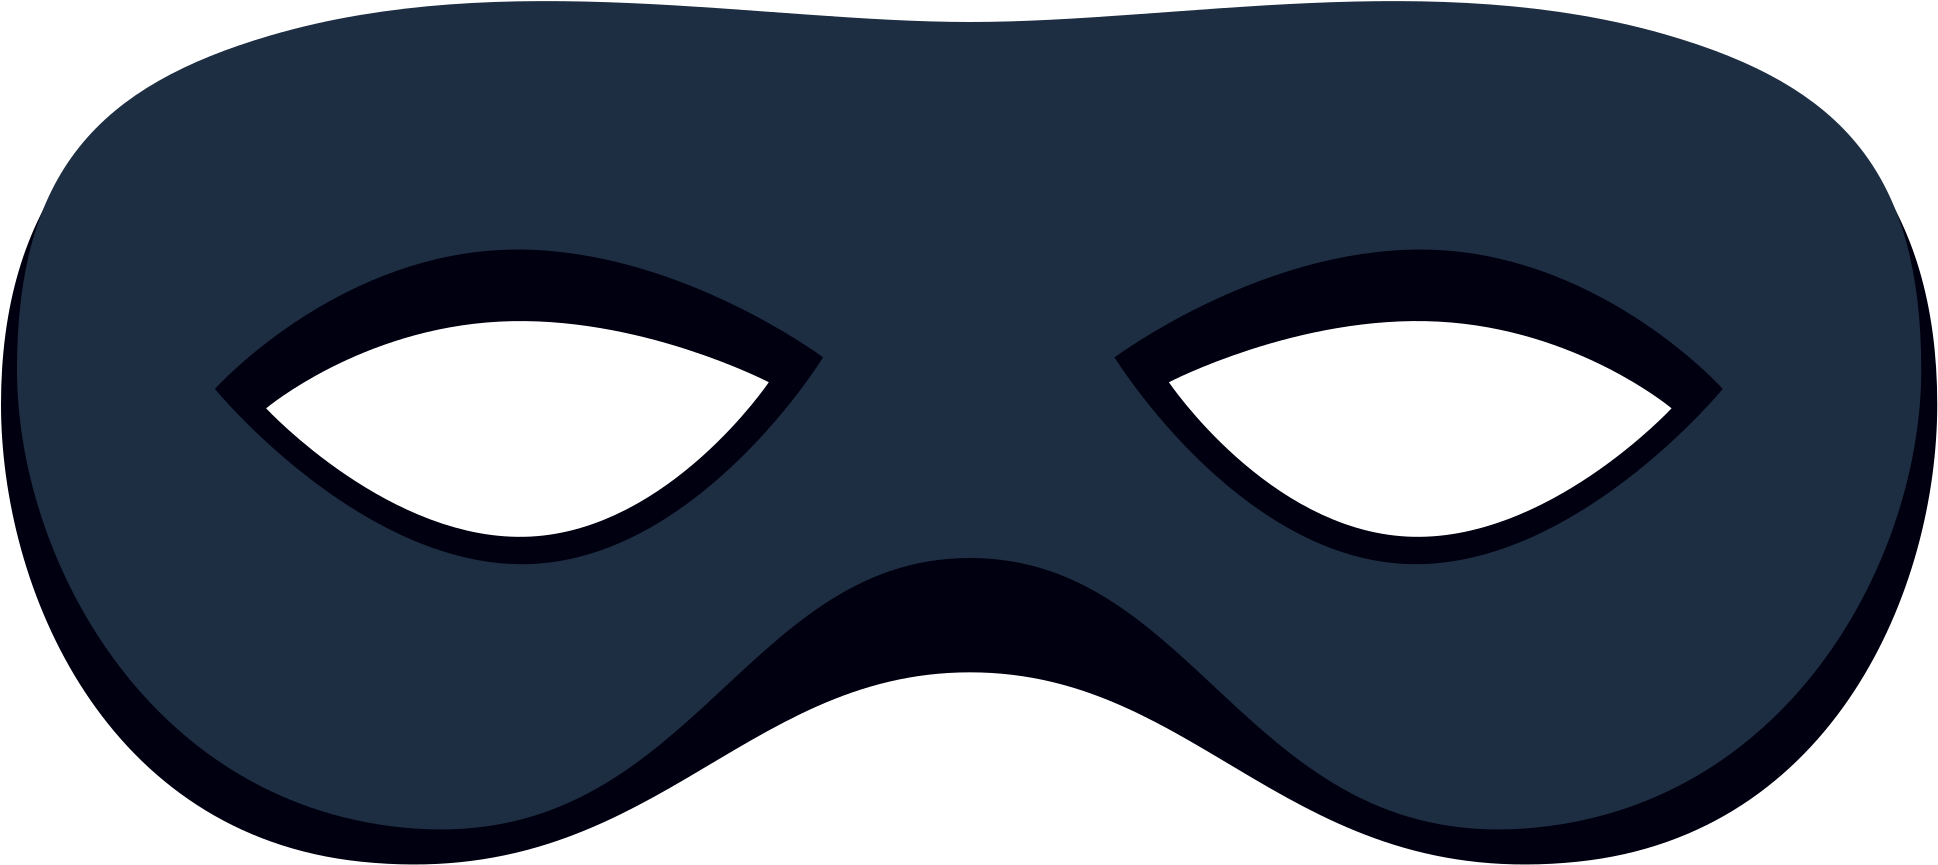 Burglar Mask - Robber Mask Png (2048x2048), Png Download